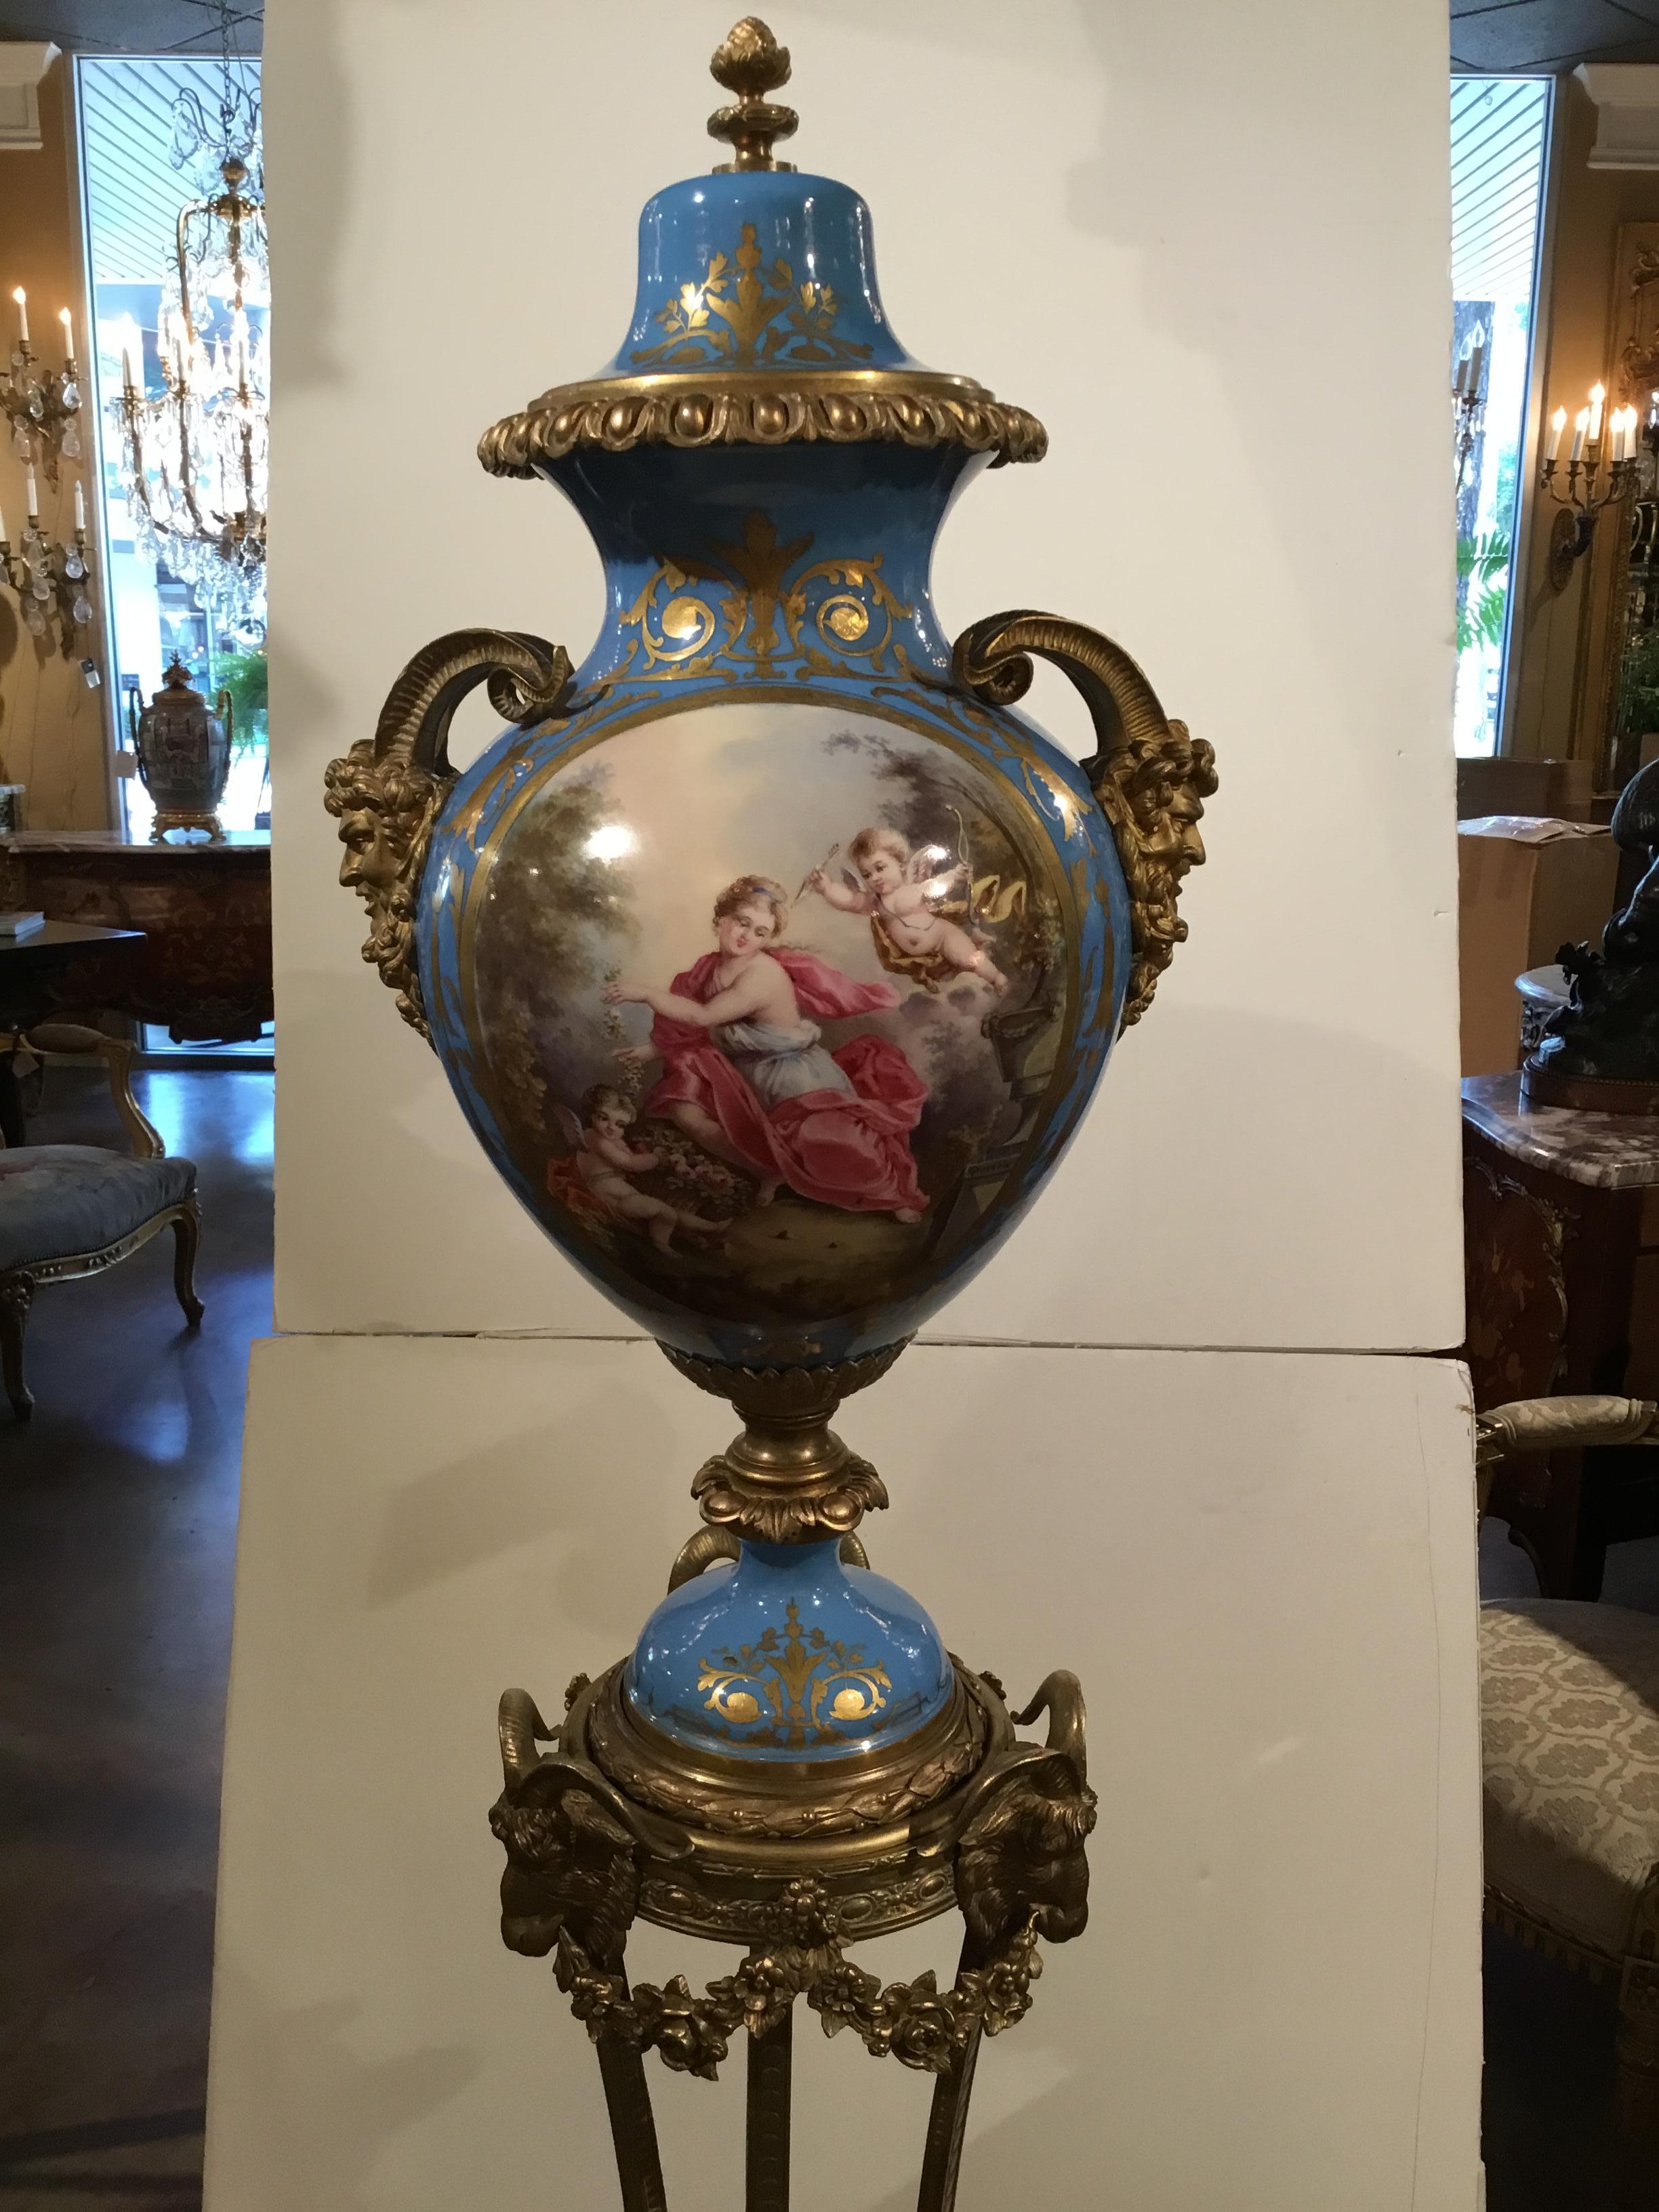 Urna de Sevres con escena de jardín francés pintada a mano en la parte frontal de la urna
Y un paisaje francés pintado en el reverso. La marca de Sevres está pintada
Bajo vidriado en la tapa de la urna. Está montada en un pedestal de bronce